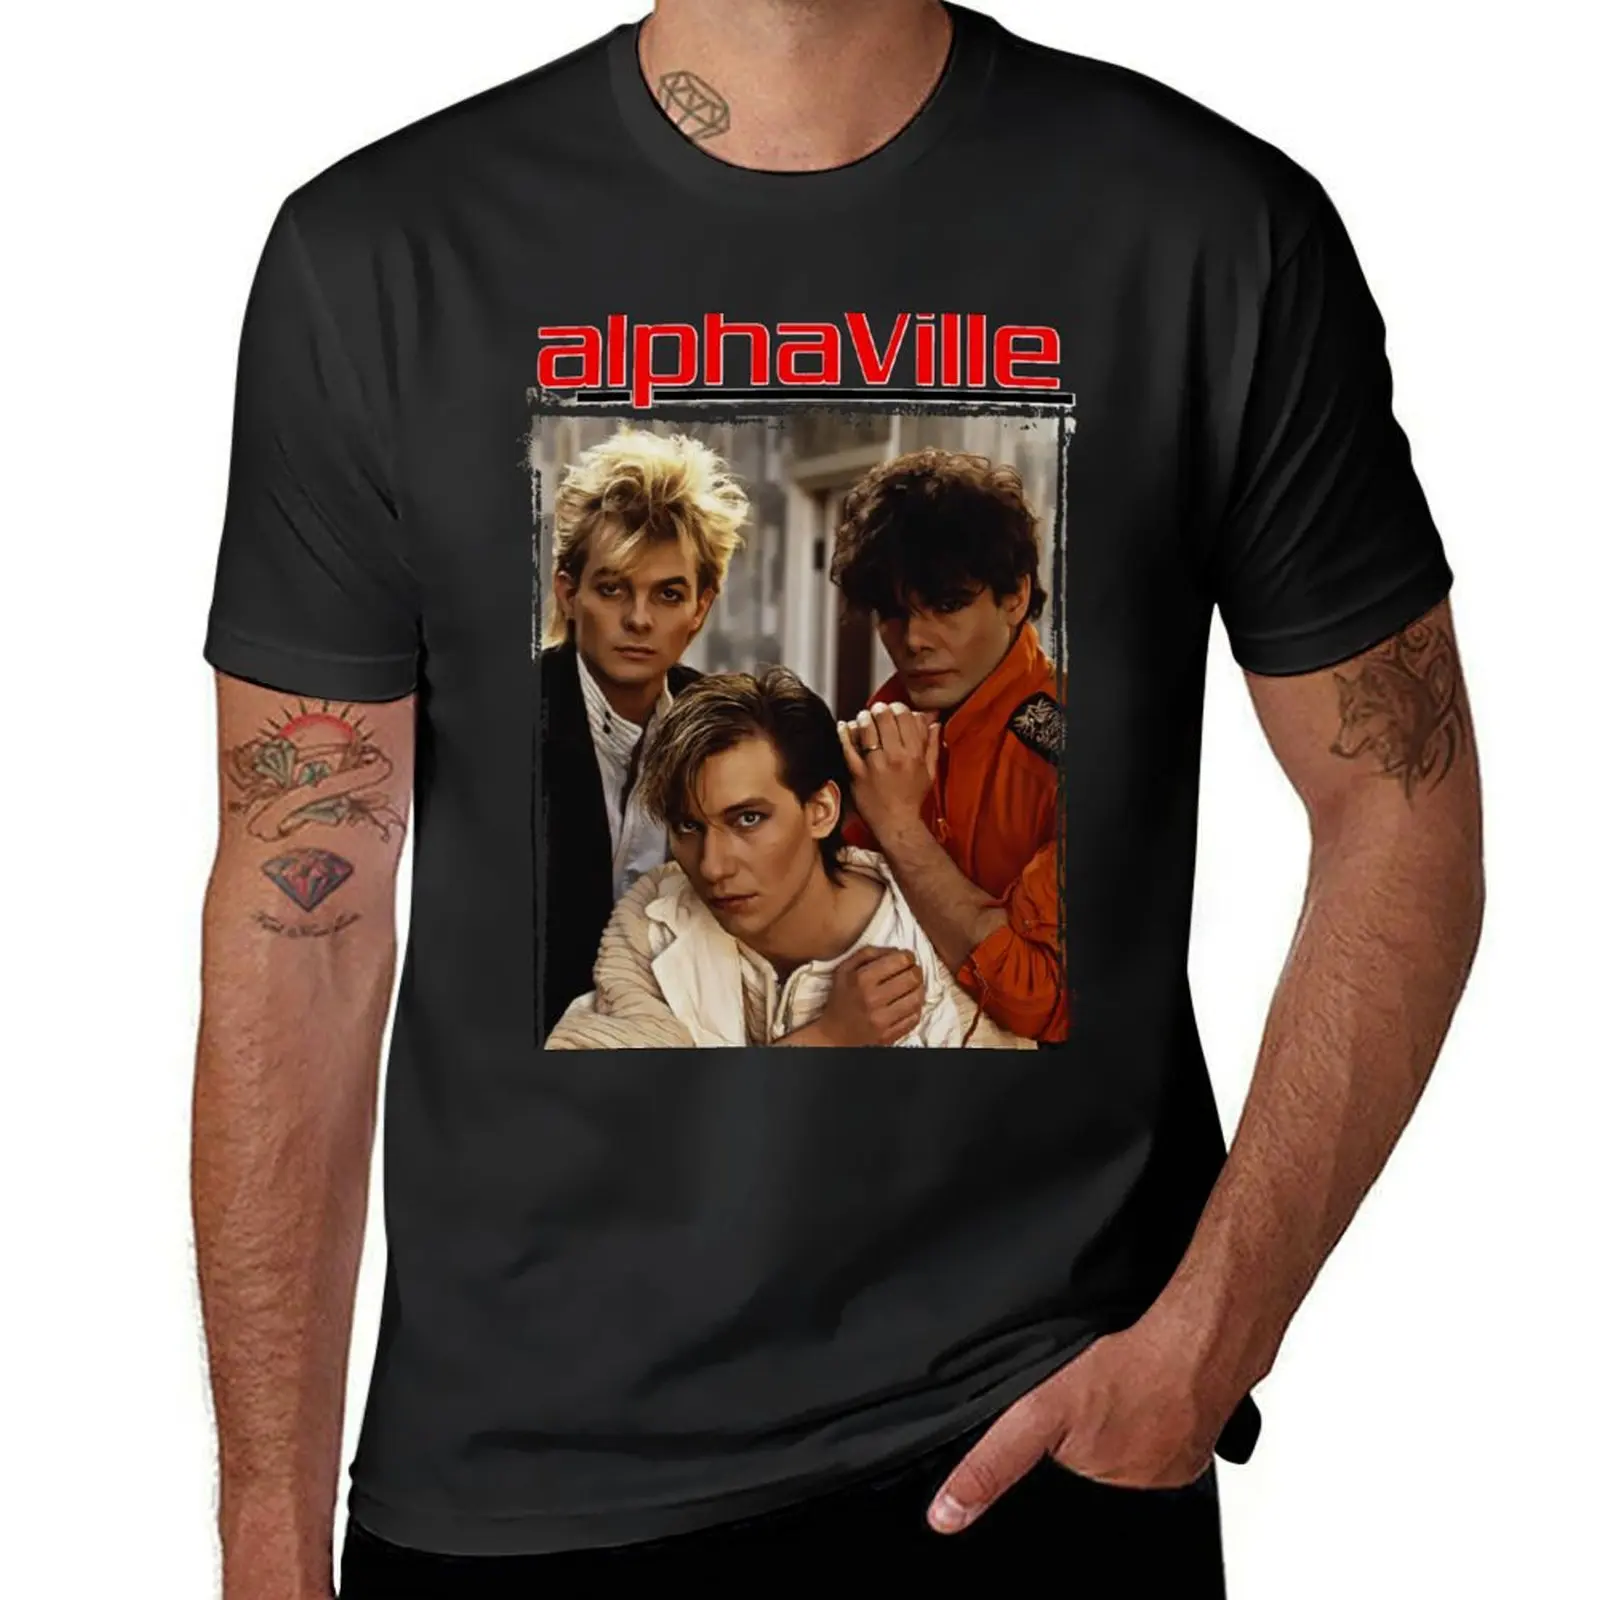 Camiseta de banda Alphaville para hombres, ropa de anime, moda coreana, animal prinfor, camisetas grandes y altas